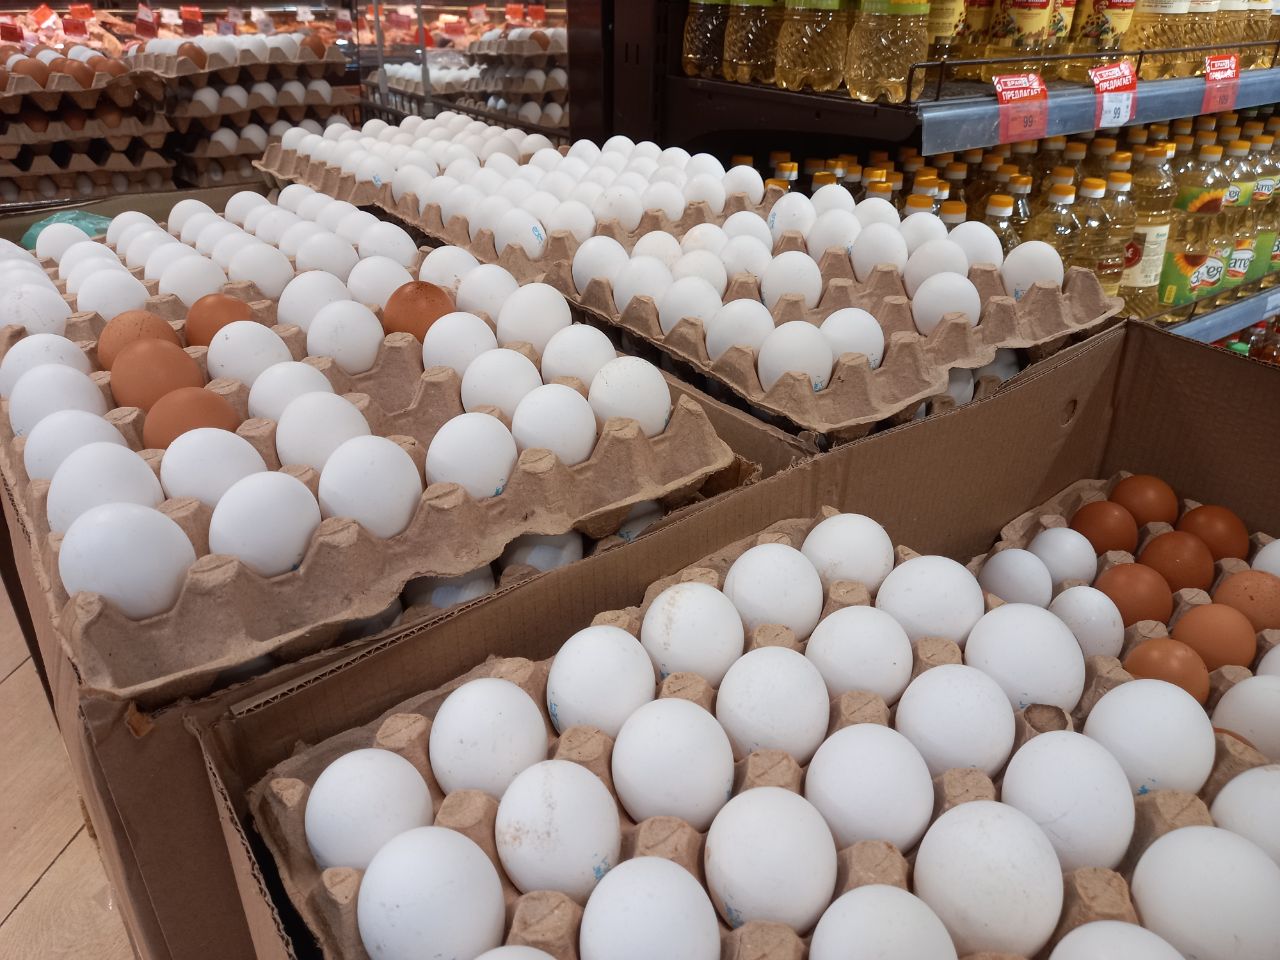 Алиханов сравнил цены на яйца в Польше и Калининградской области: «у нас чуть ли не в 2 раза дешевле»